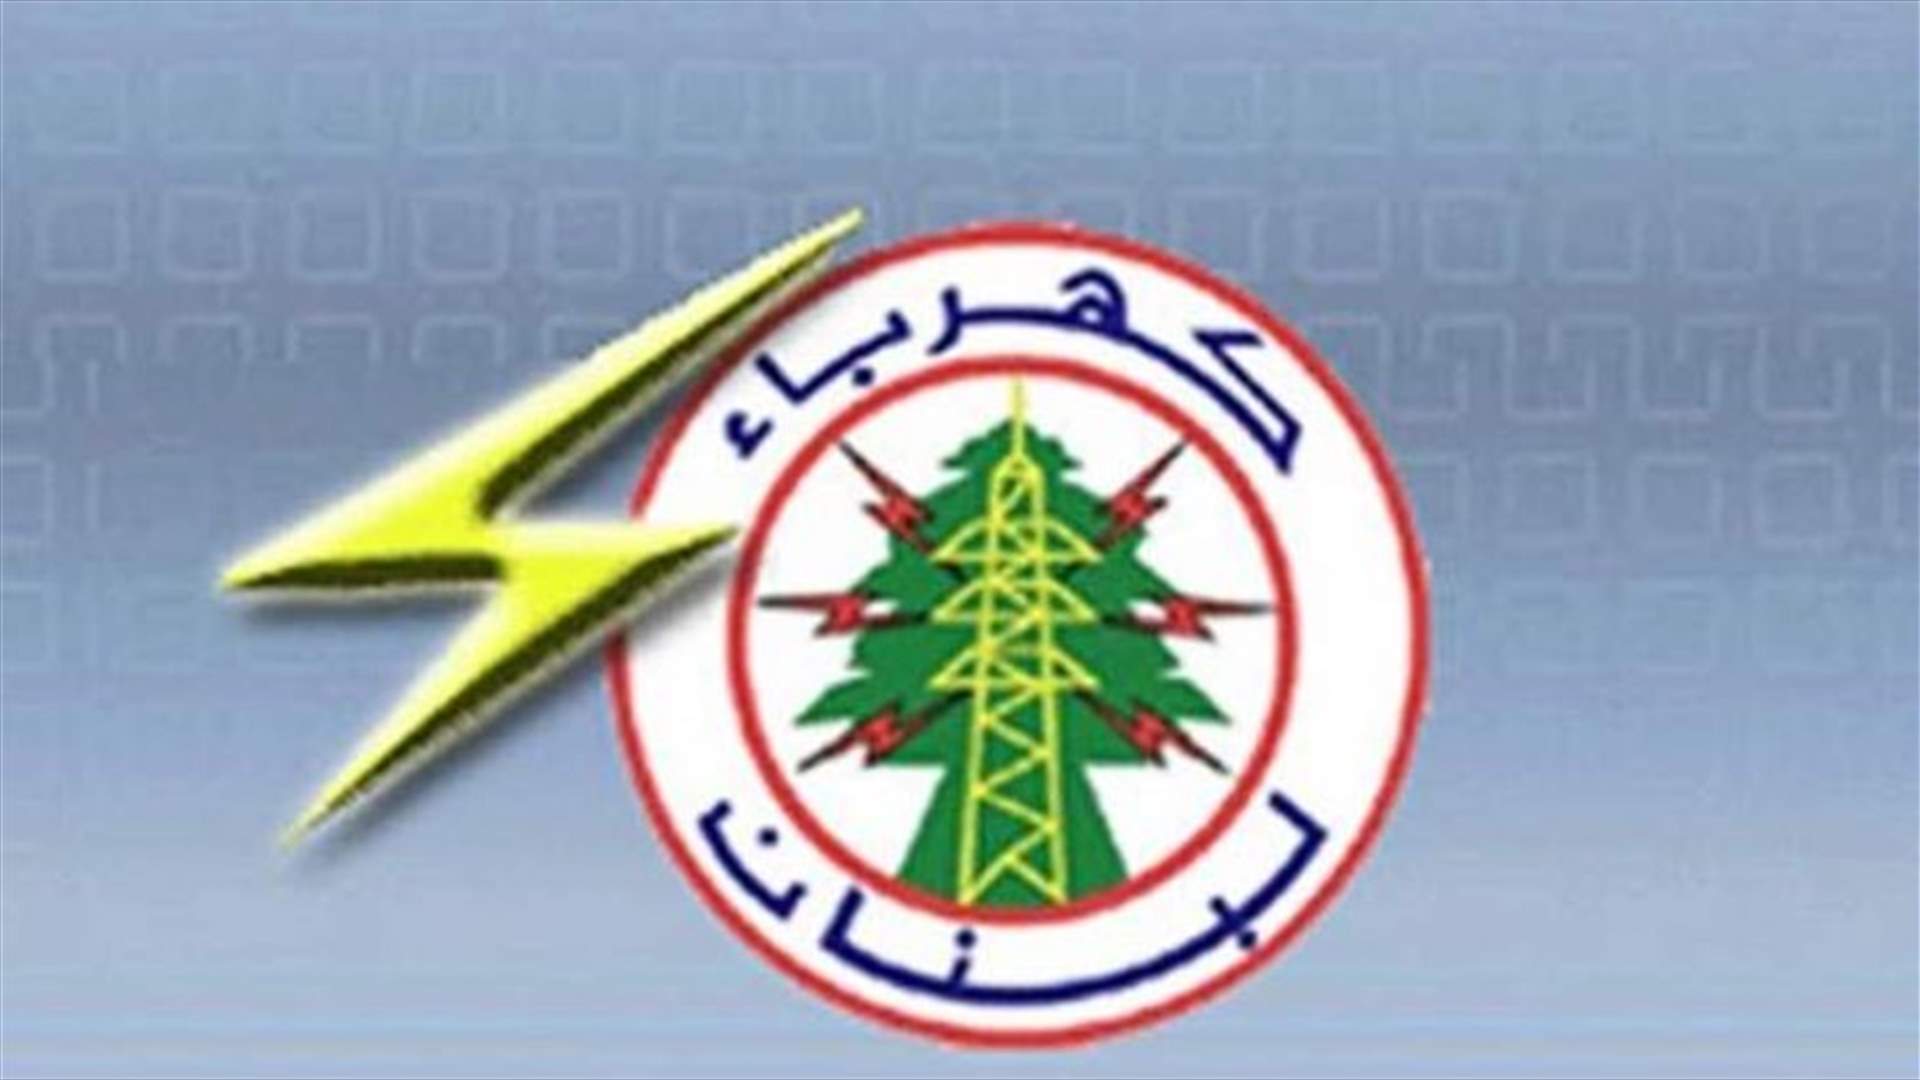 إقفال دائرة النبطية في مؤسسة كهرباء لبنان إثر اصابة أحد الموظفين بكورونا